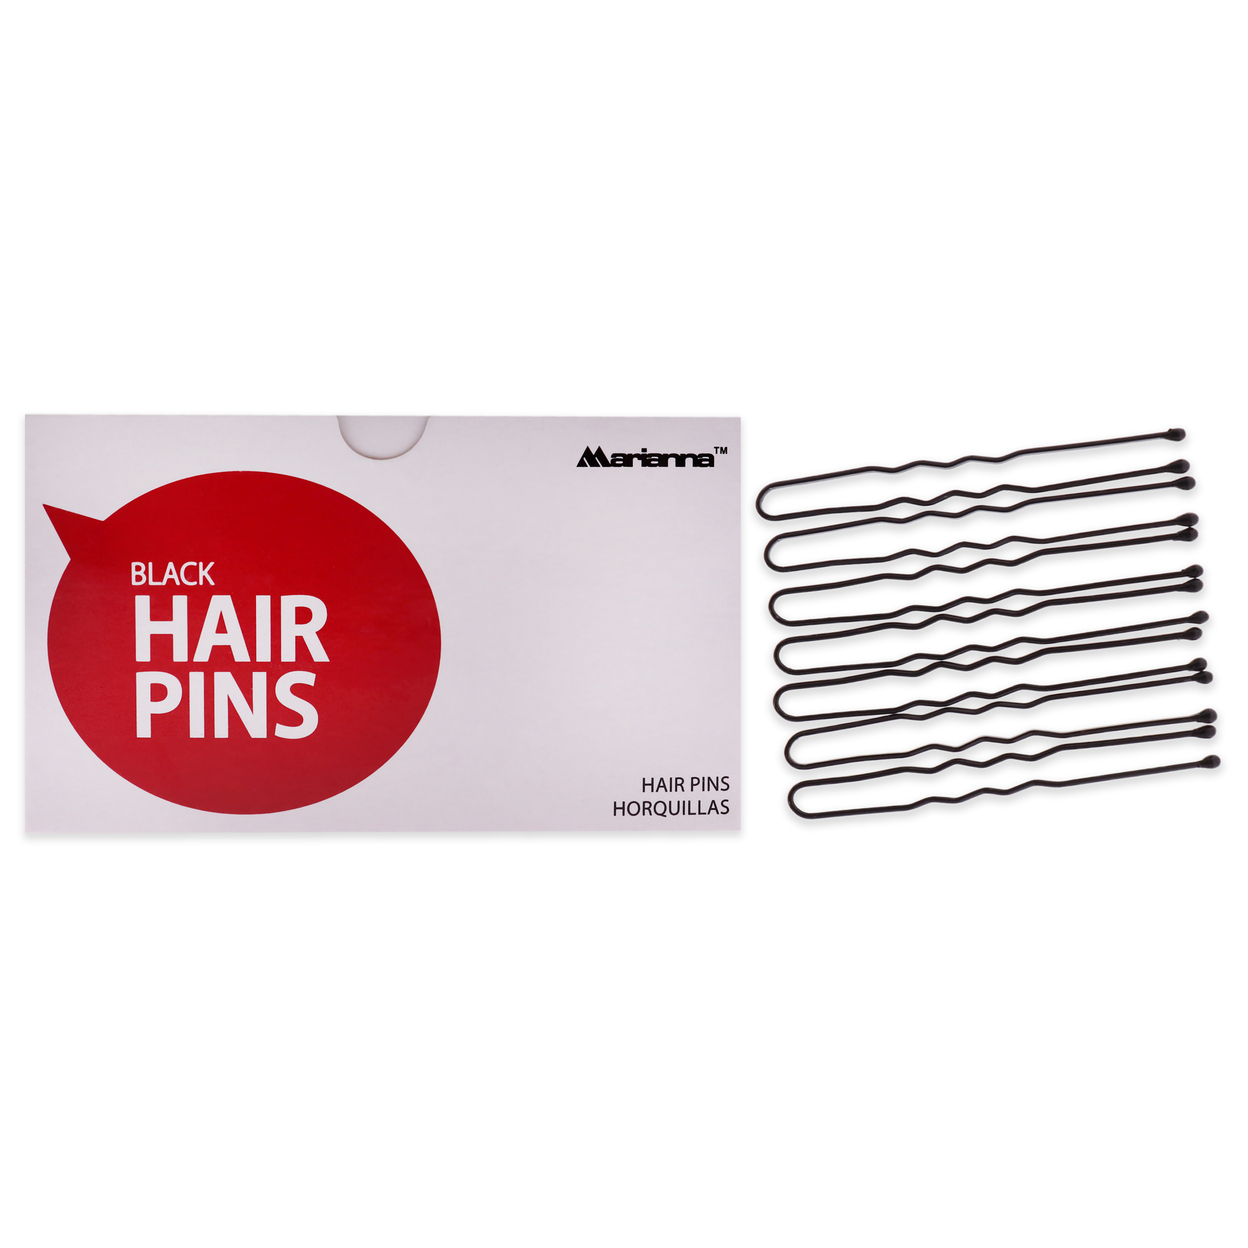 Marianna Pro Basic Hair Pins - Black Hair Clips 1 Lb